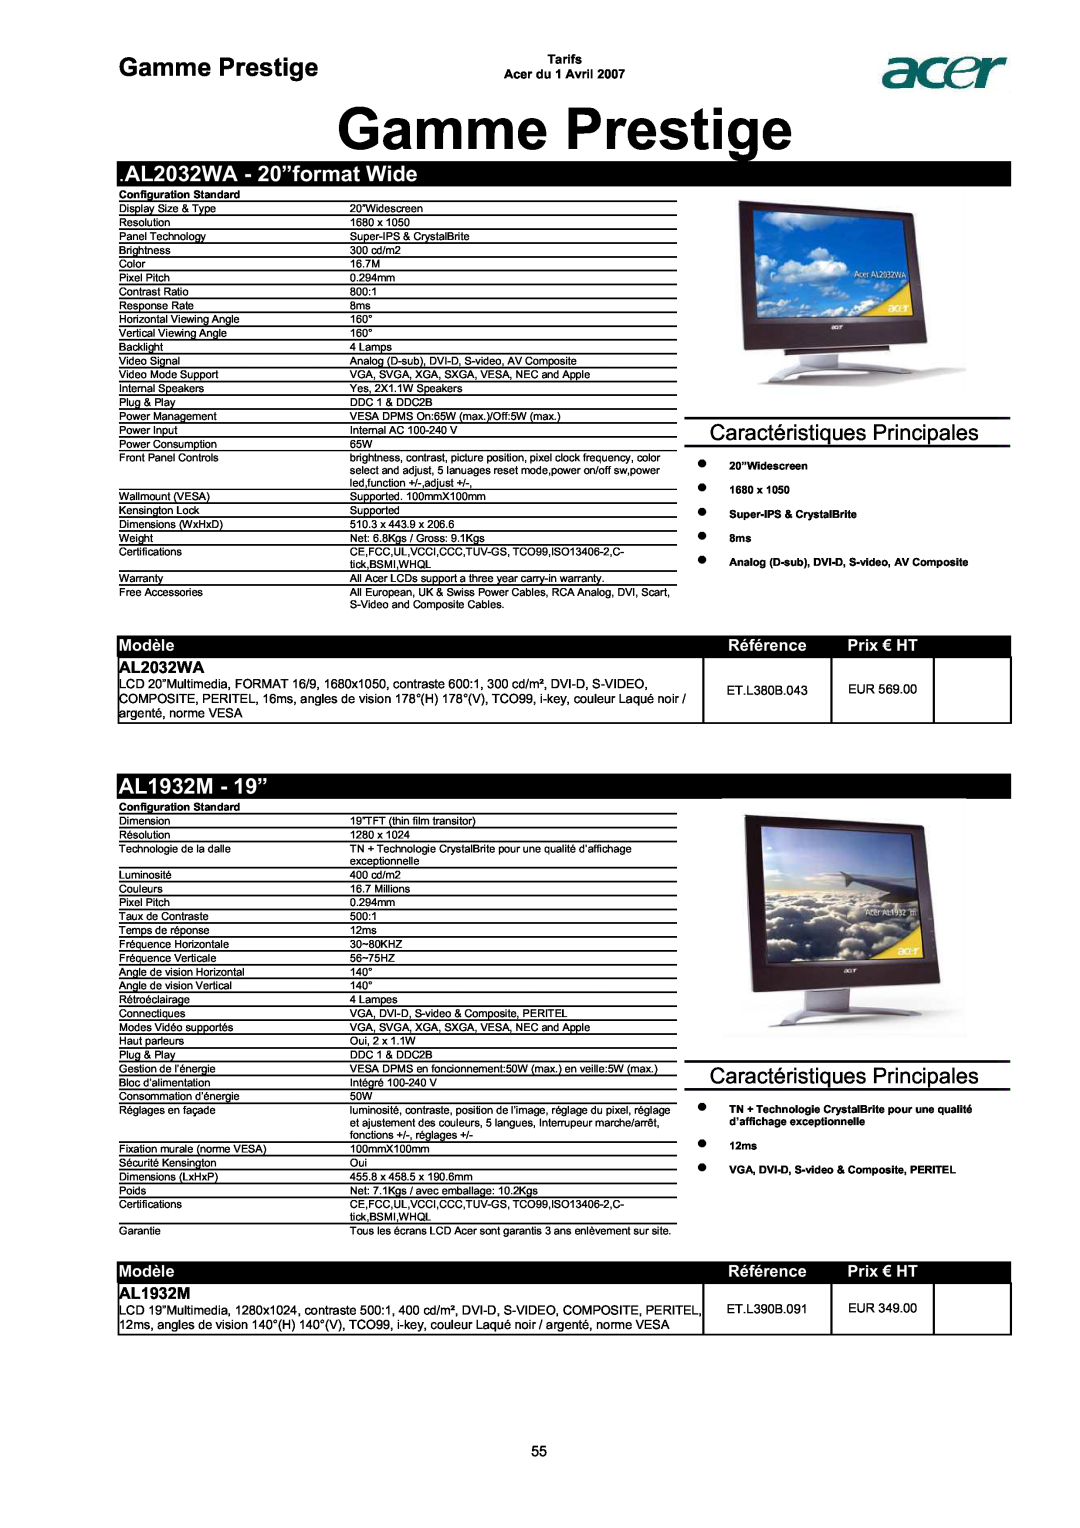 Acer AC713B-17 Gamme Prestige, AL2032WA - 20”format Wide, AL1932M - 19”, Caractéristiques Principales, Modèle, Référence 